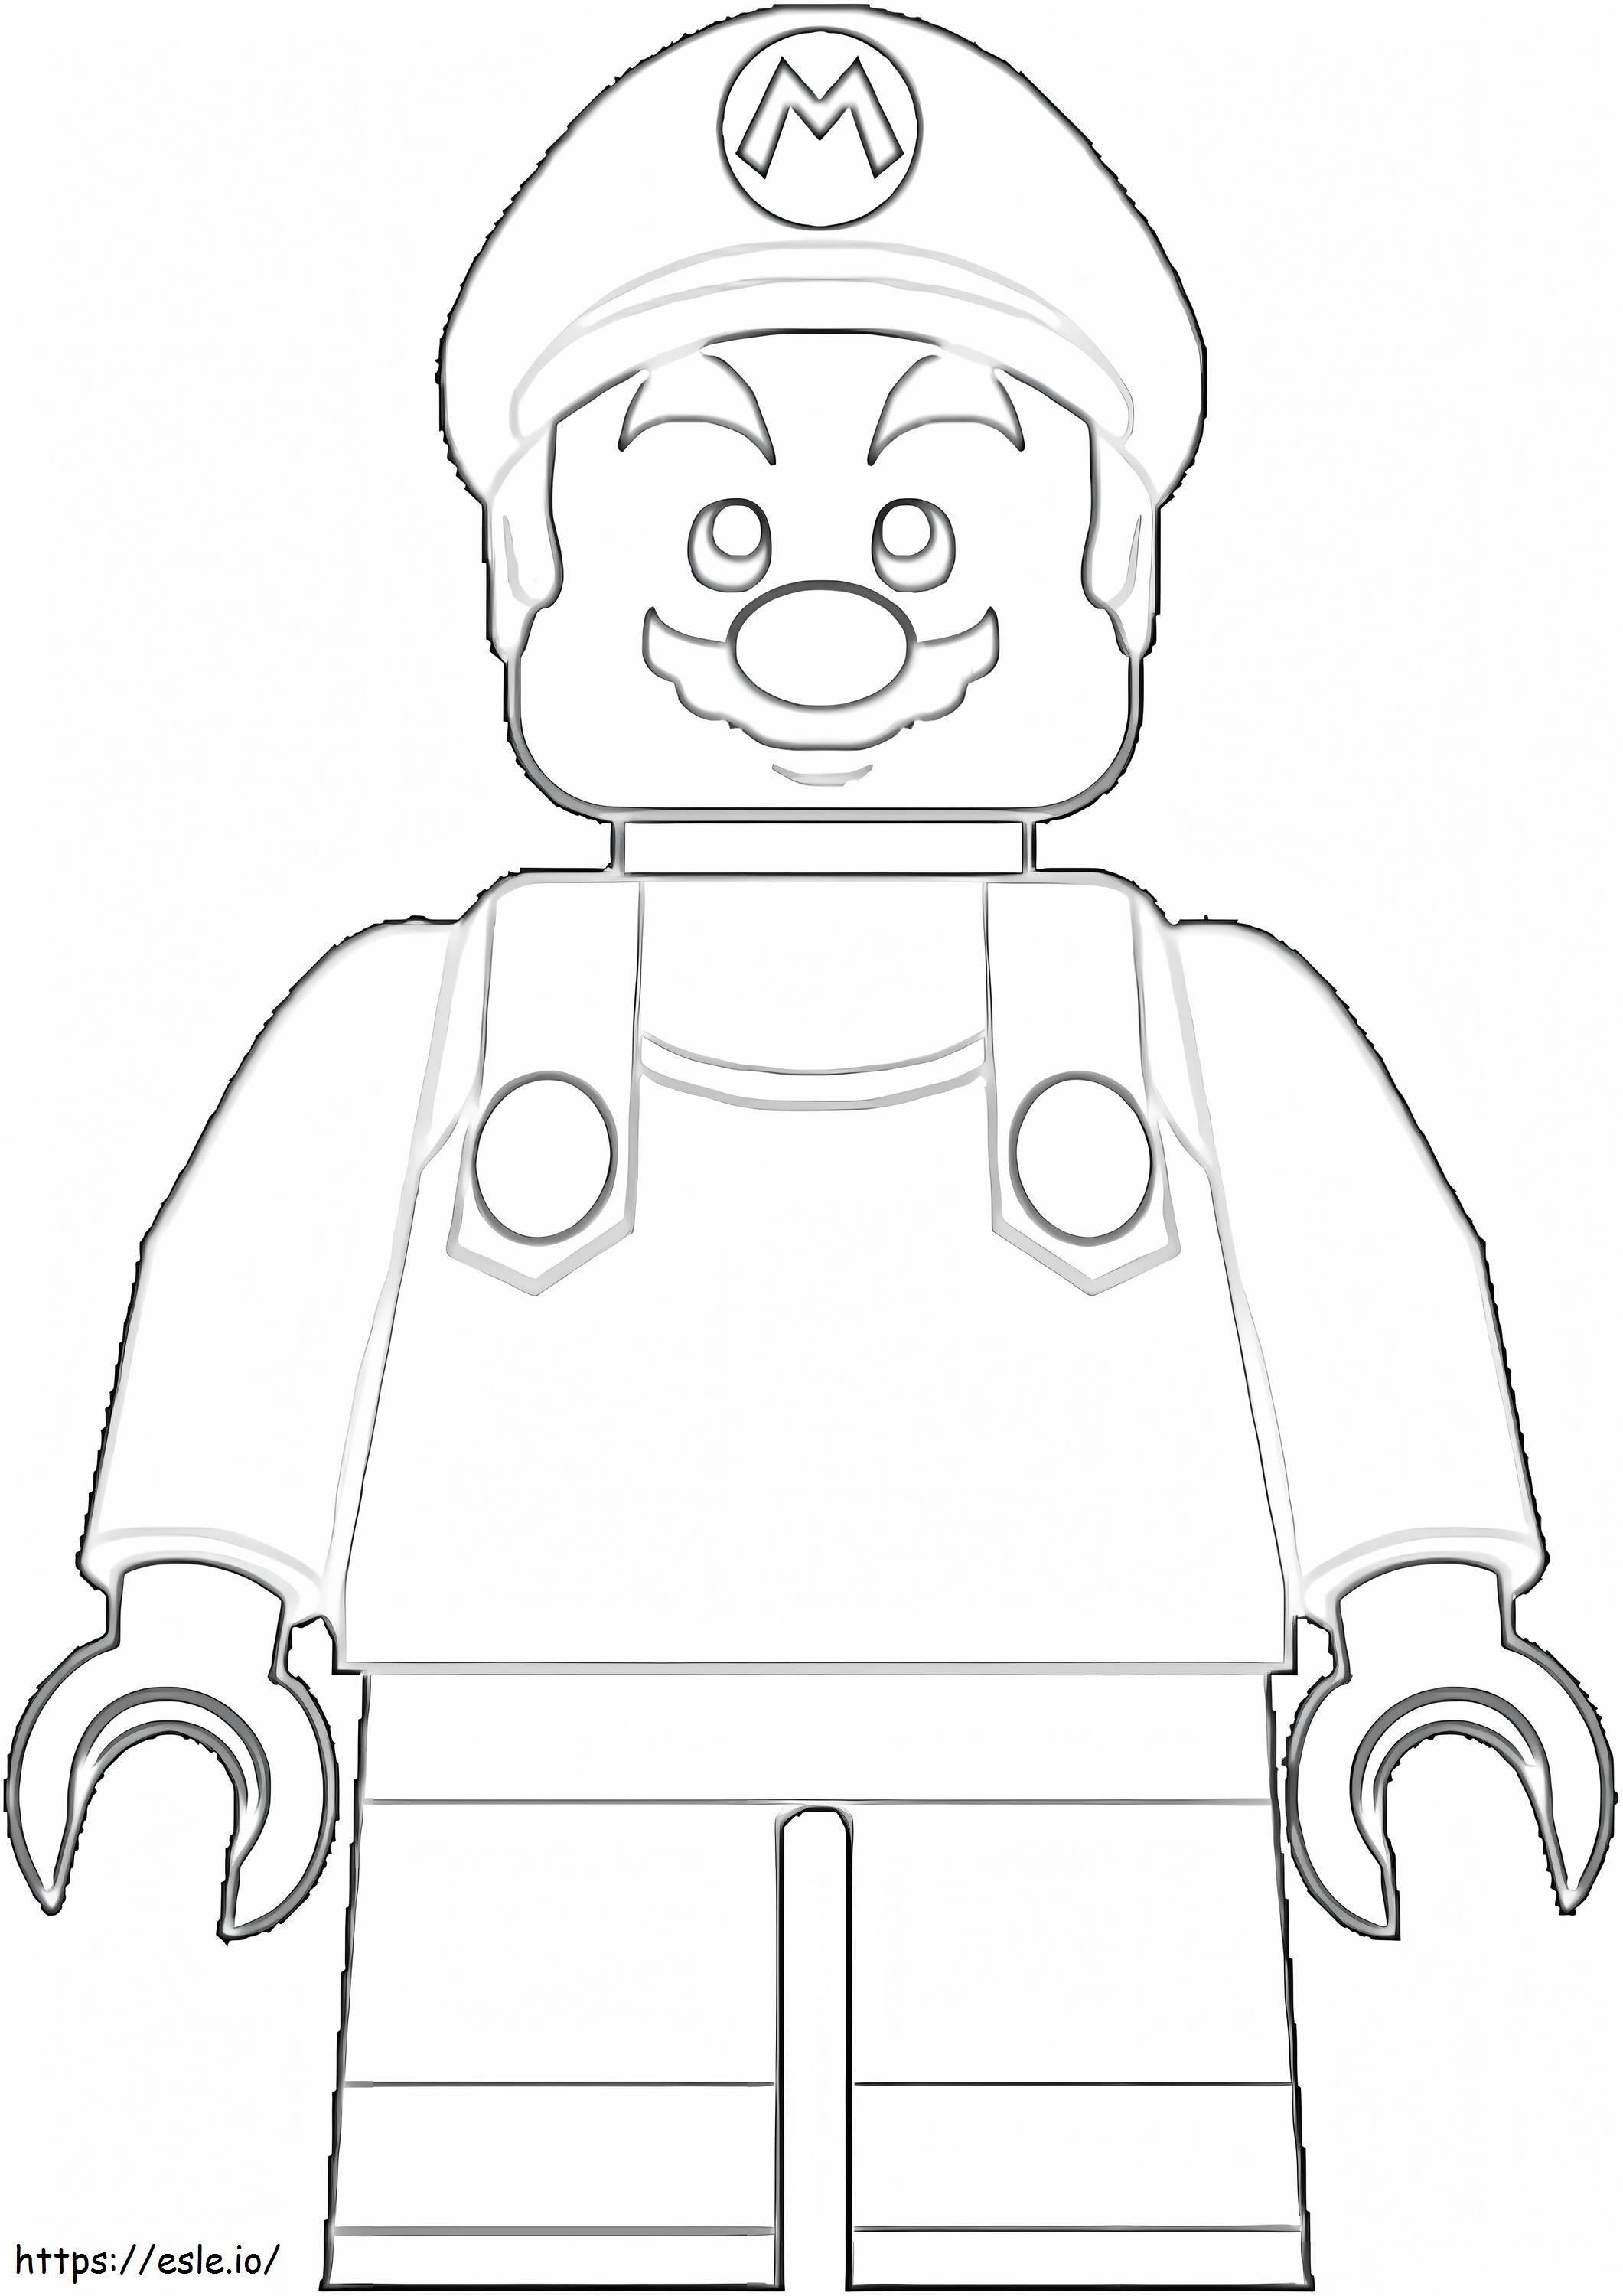 Lego Super Mário 3 para colorir